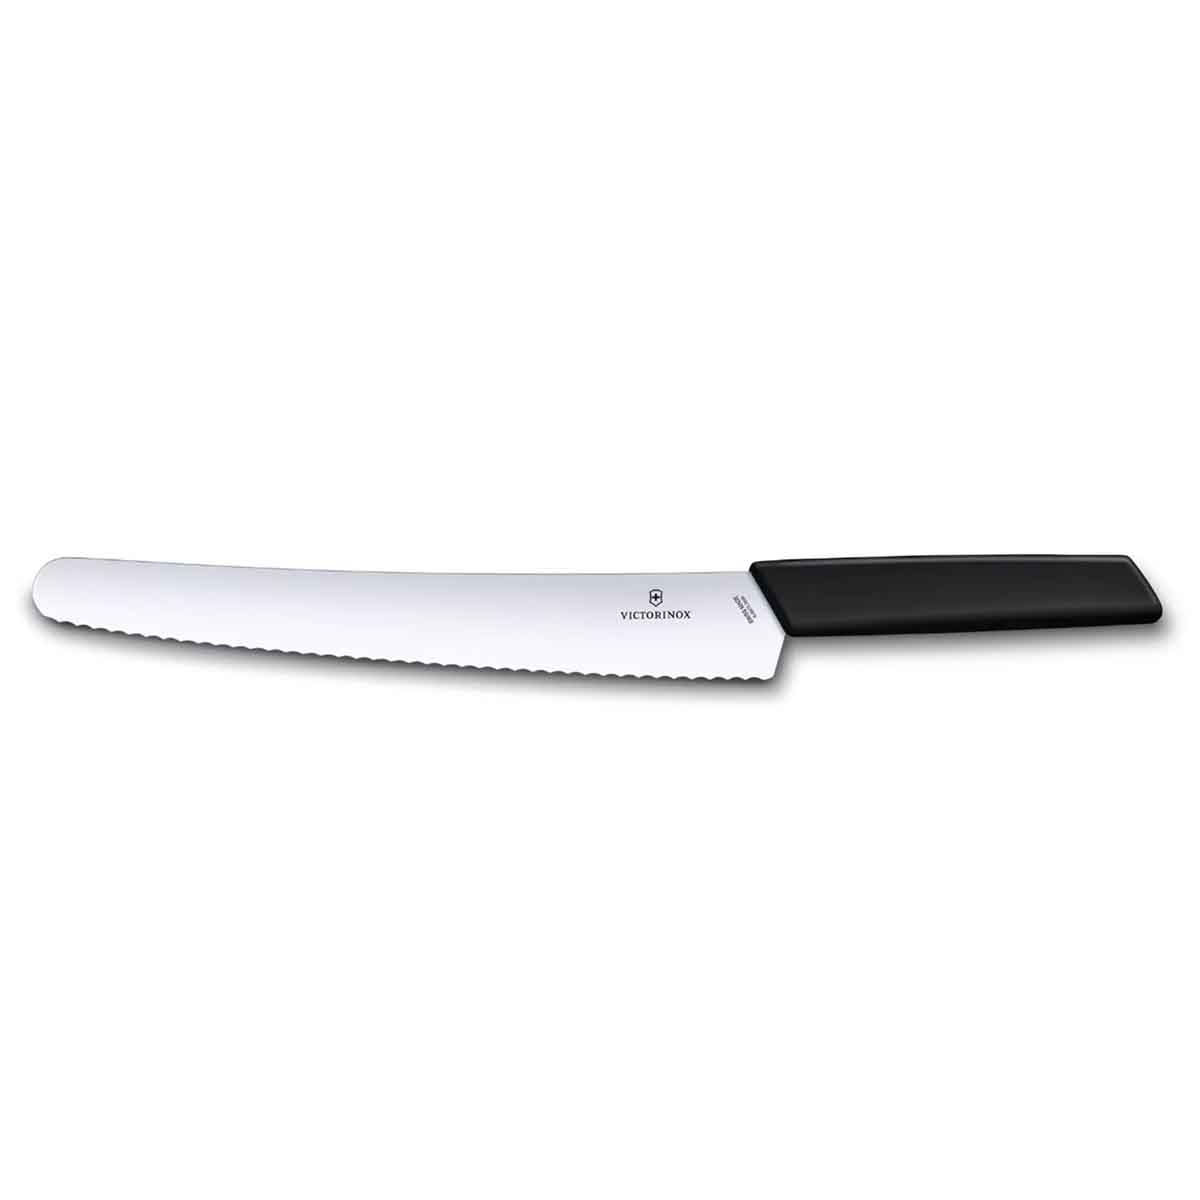 Cuchillos de Victorinox: la elección perfecta para cocinar con calidad. Cuchillos para chef, verdura y pan de la colección Swiss Modern y Swiss Classic.